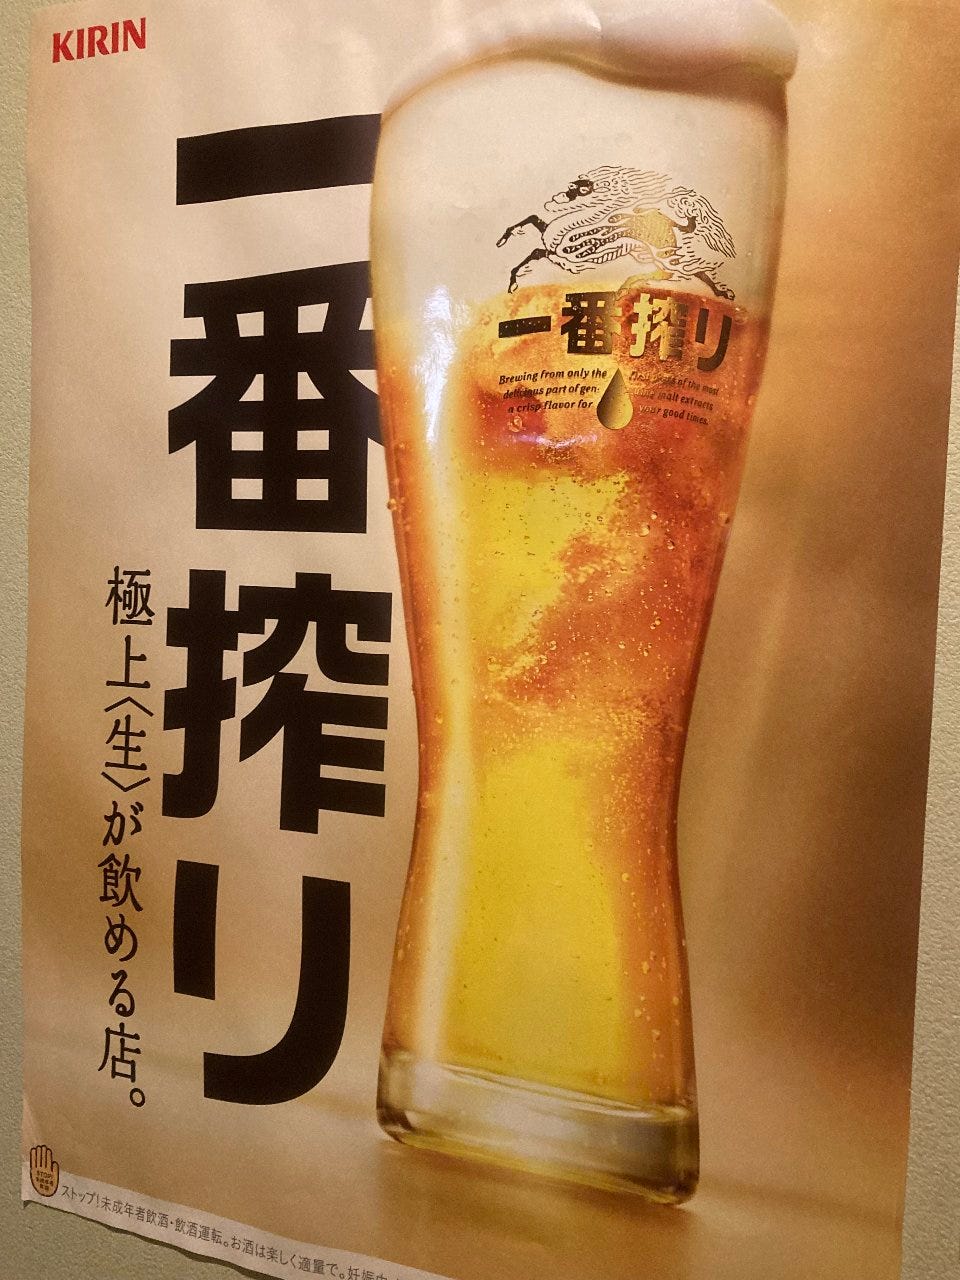 キリンビール社が認めた極上の生ビールが飲めます